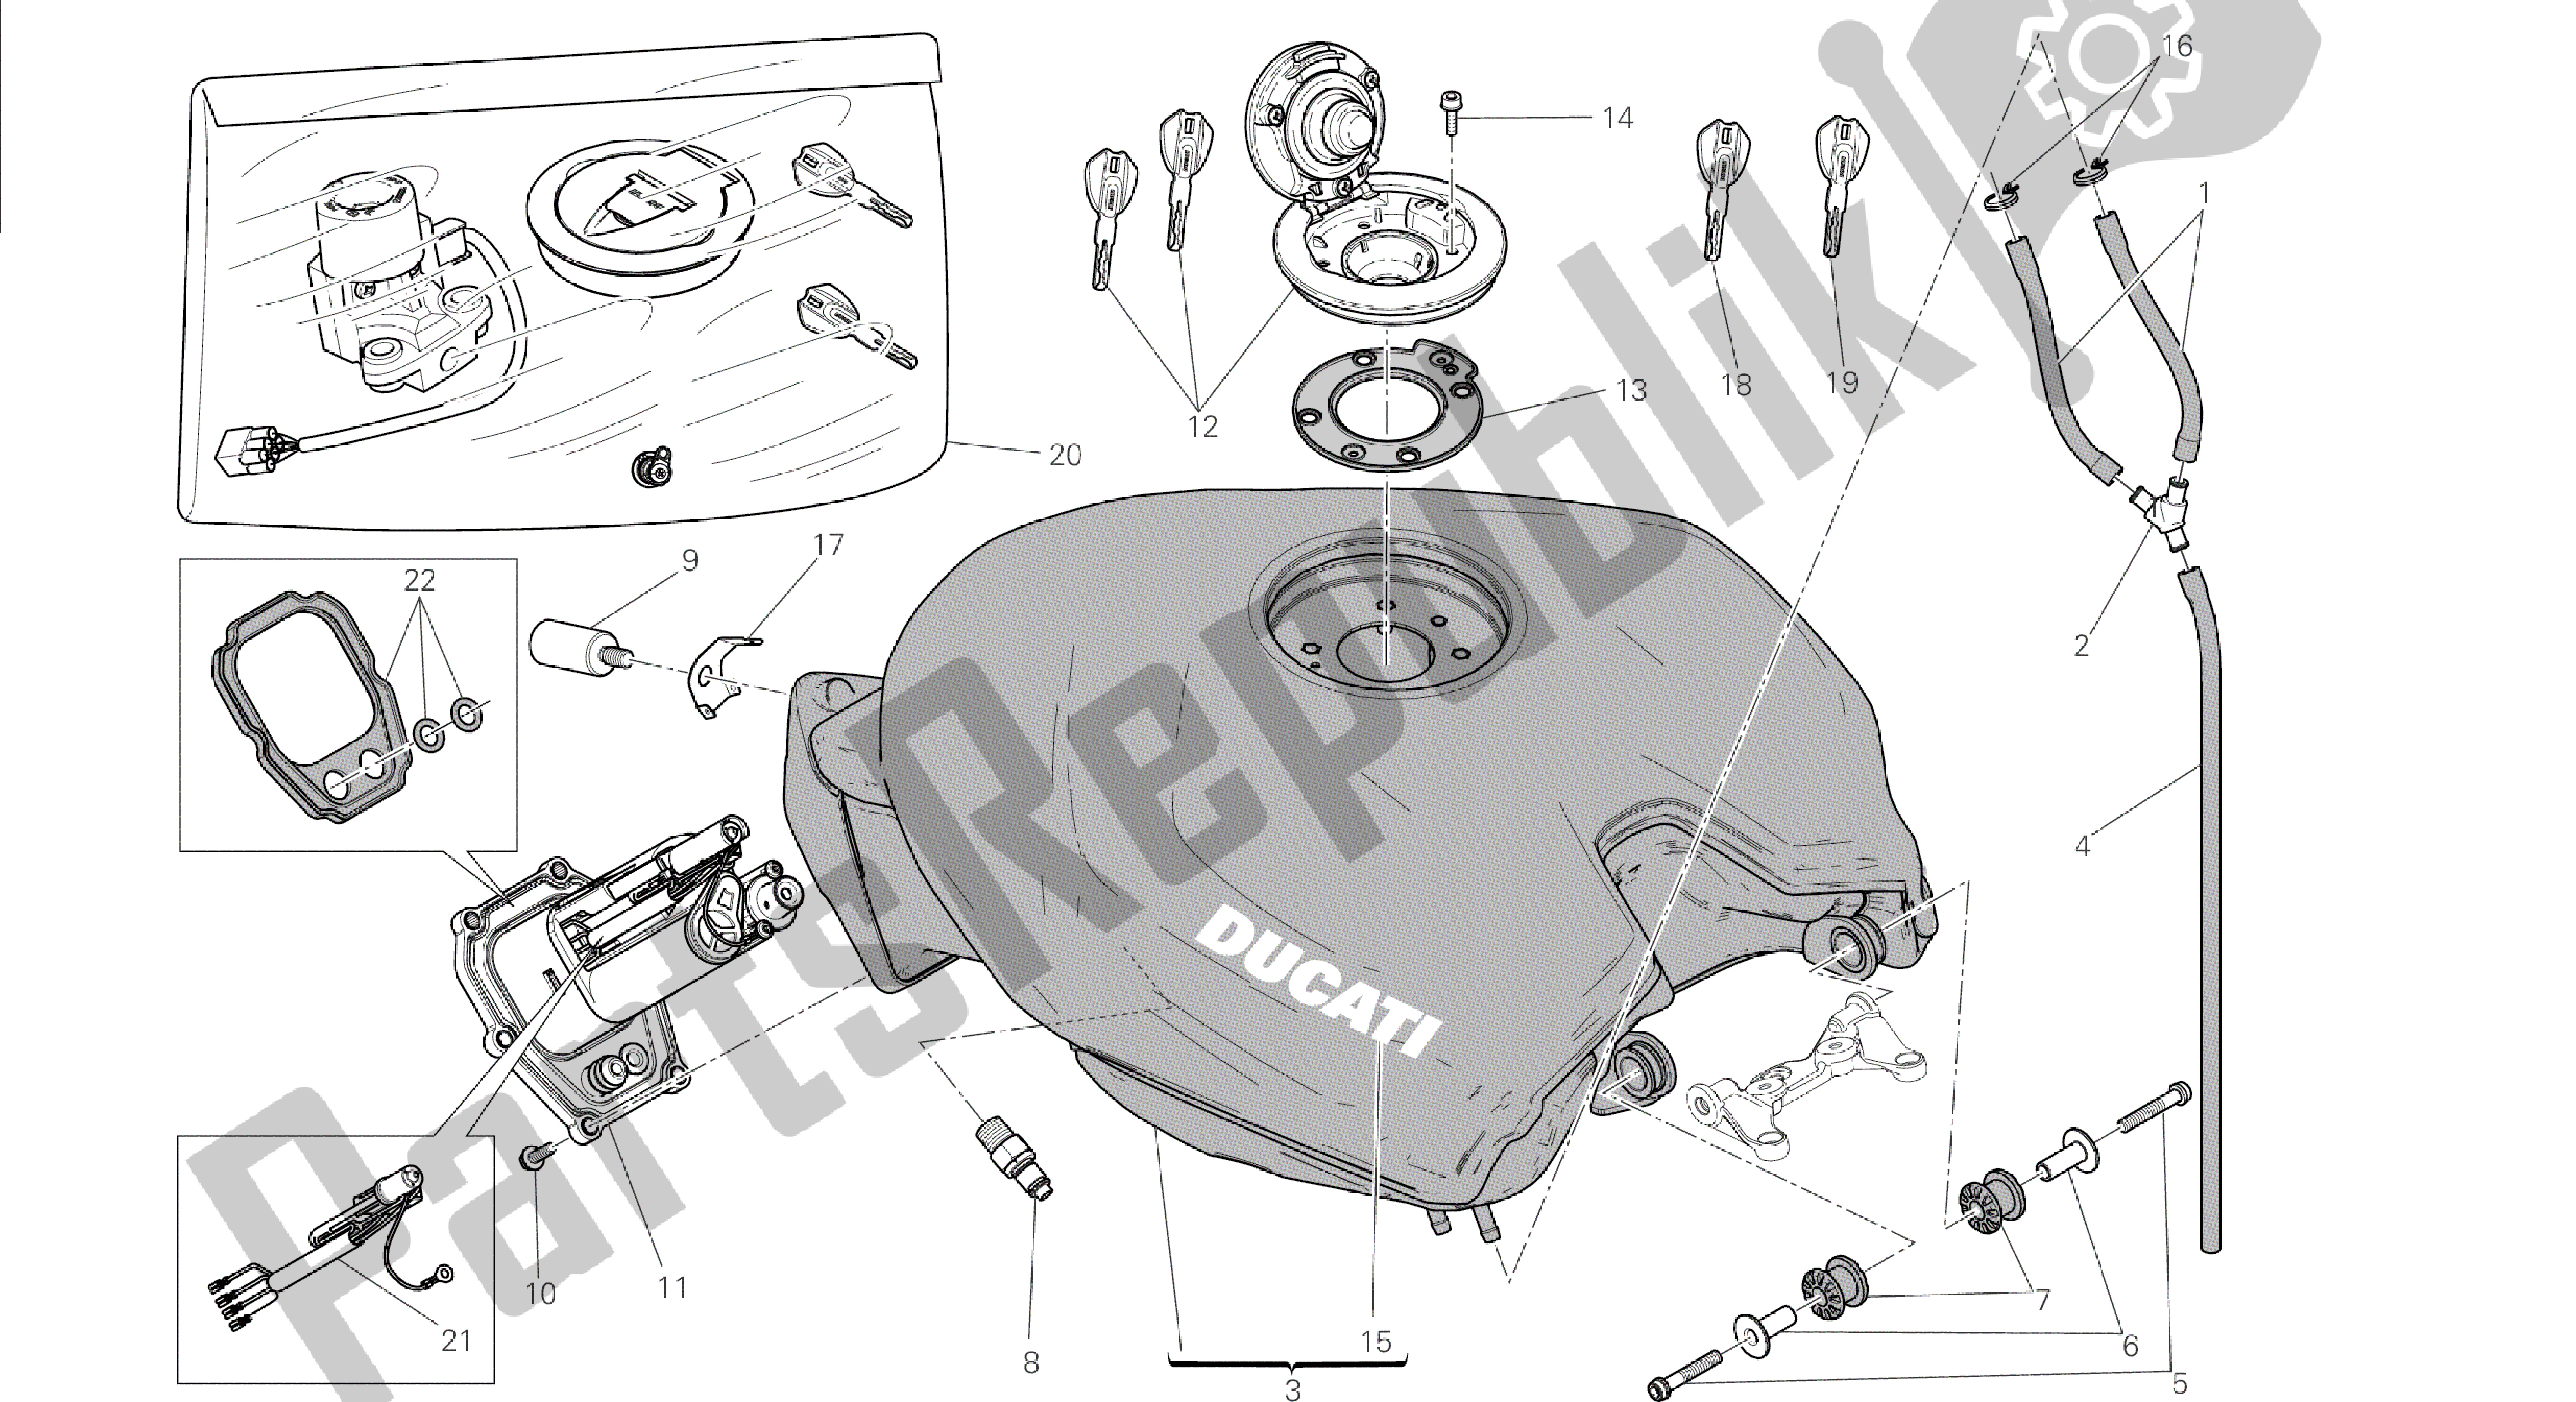 Todas las partes para Dibujo 032 - Marco De Grupo Tanque [mod: 1299; Xst: Aus, Eur, Fra, Jap] de Ducati Panigale 1299 2015